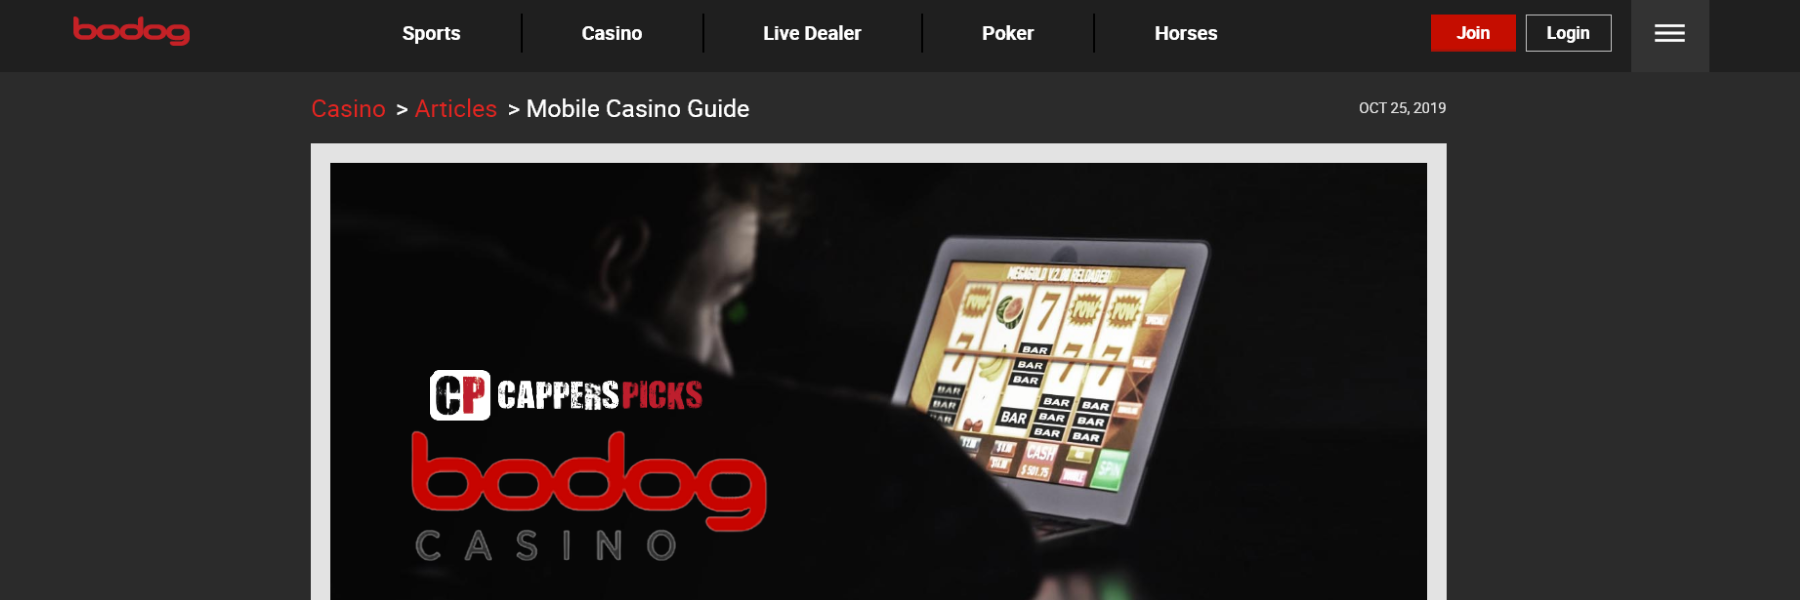 Bodog Casino Mobile